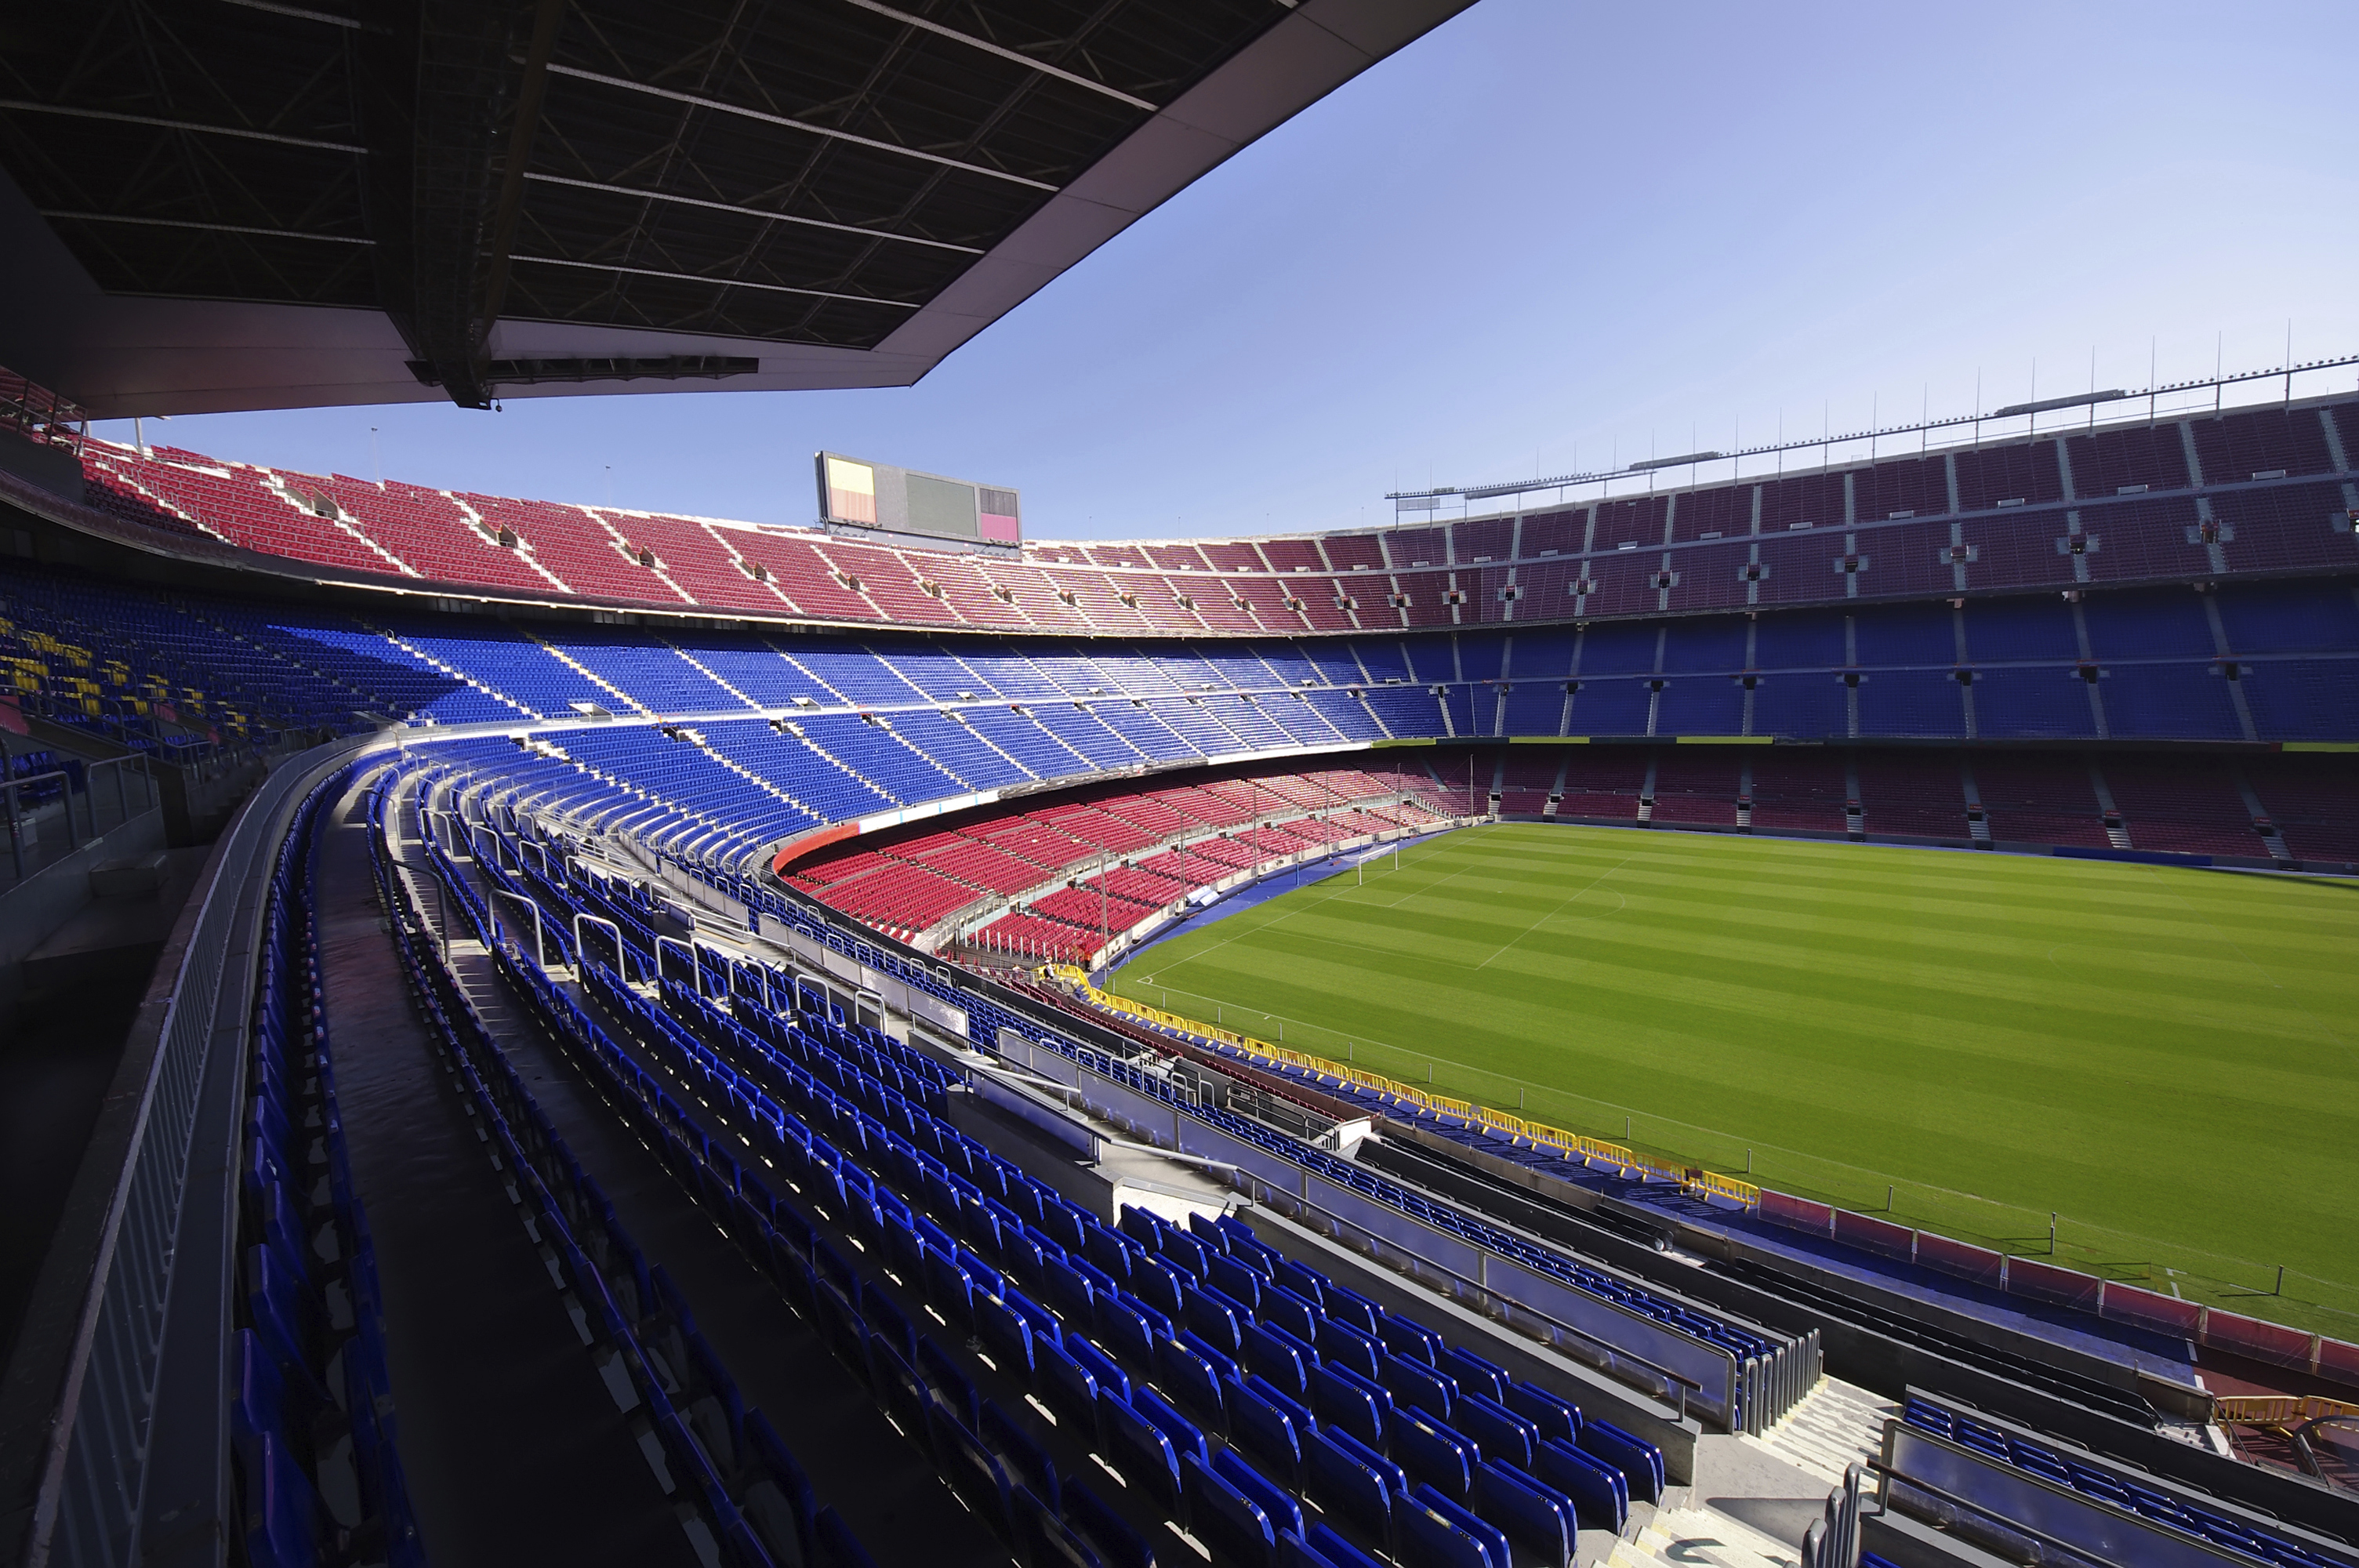 ⚽ 10 estadios más del mundo | Skyscanner Espana